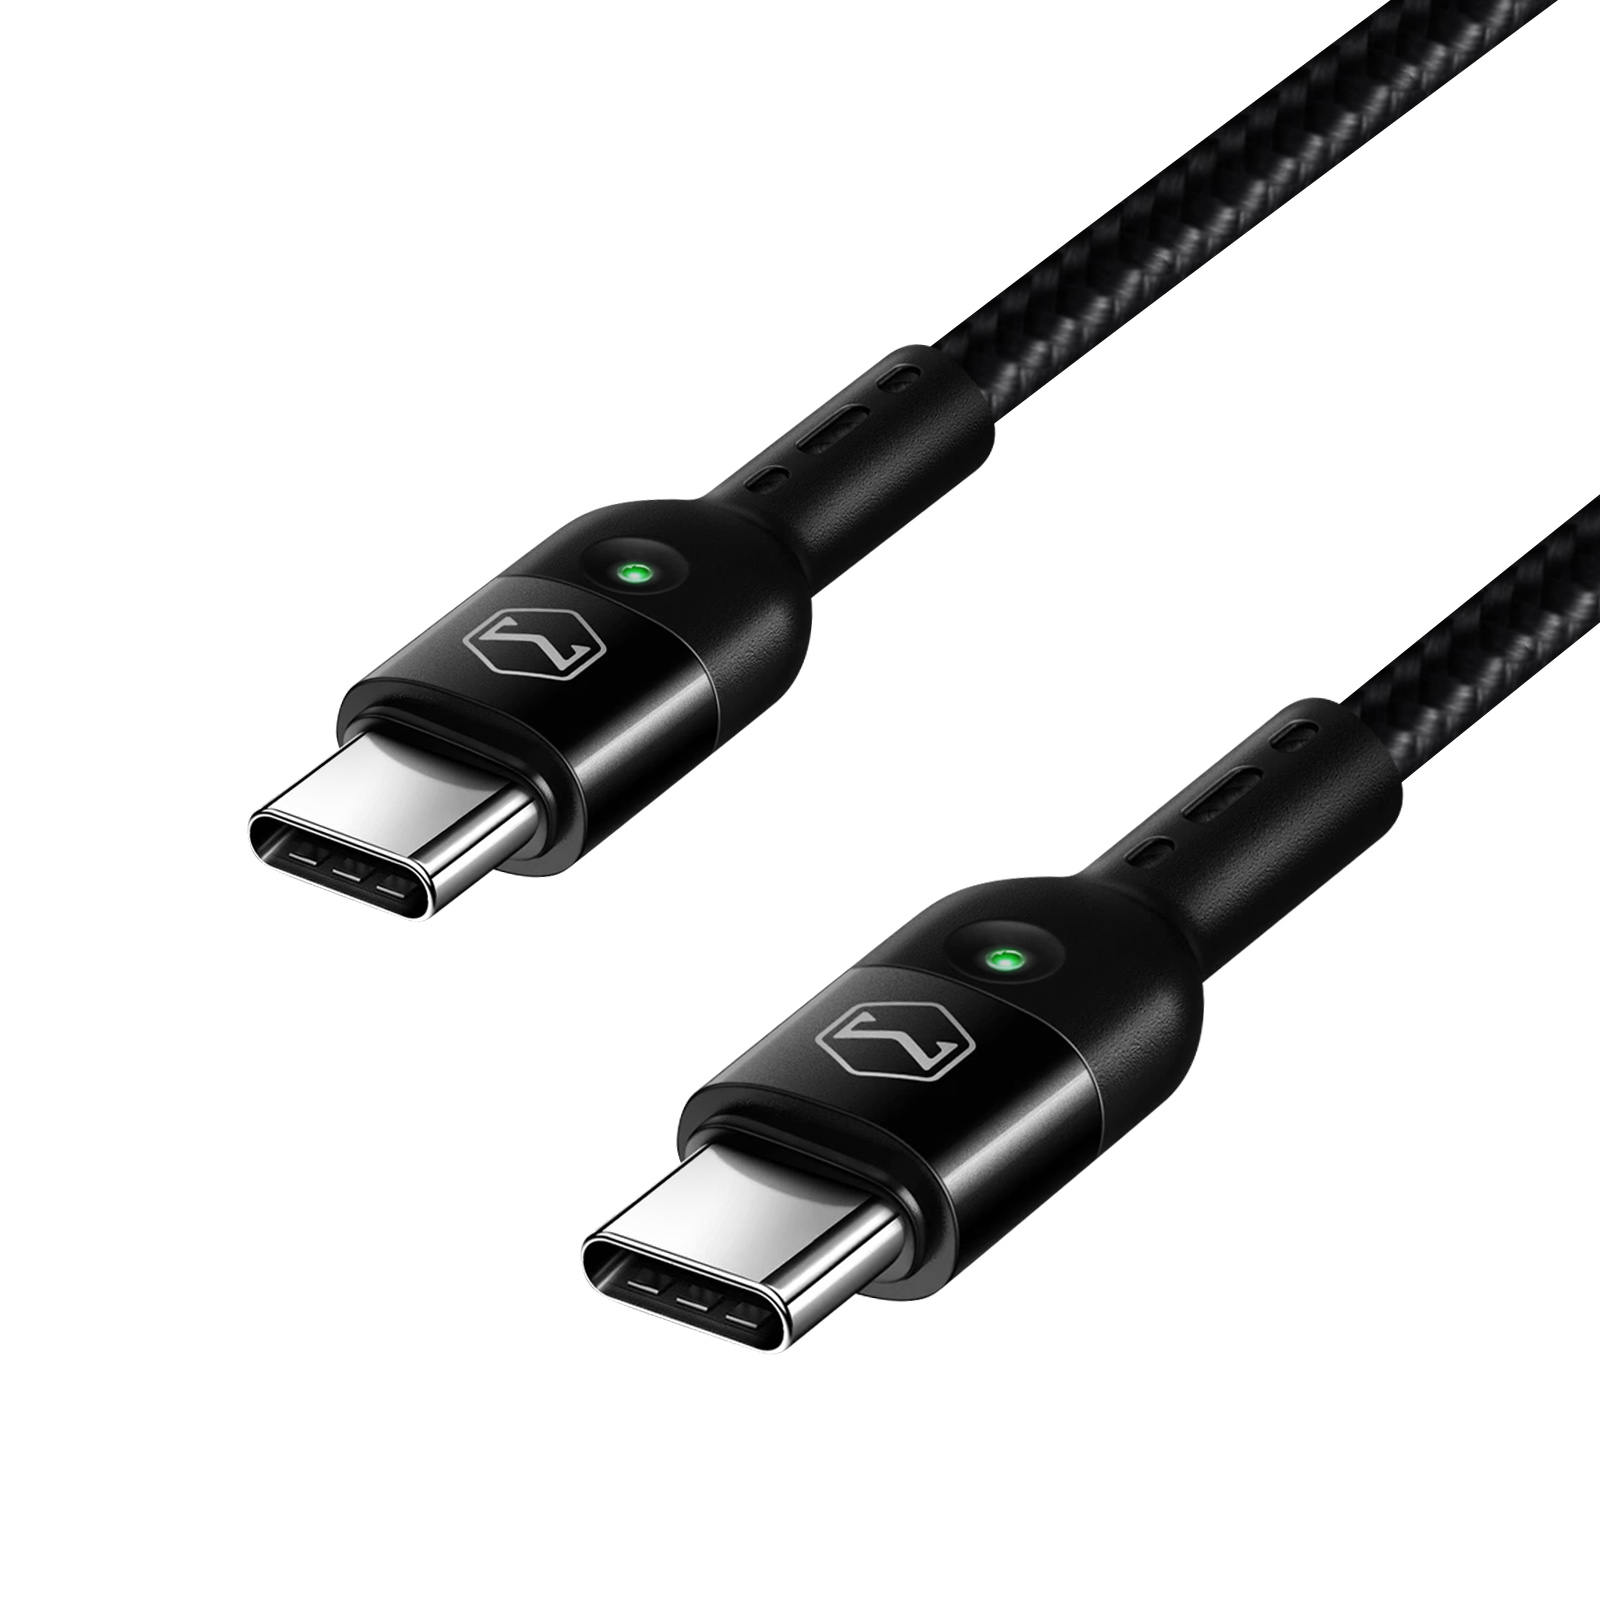 MCDODO USB-C / USB-C Kabel USB-Kabel